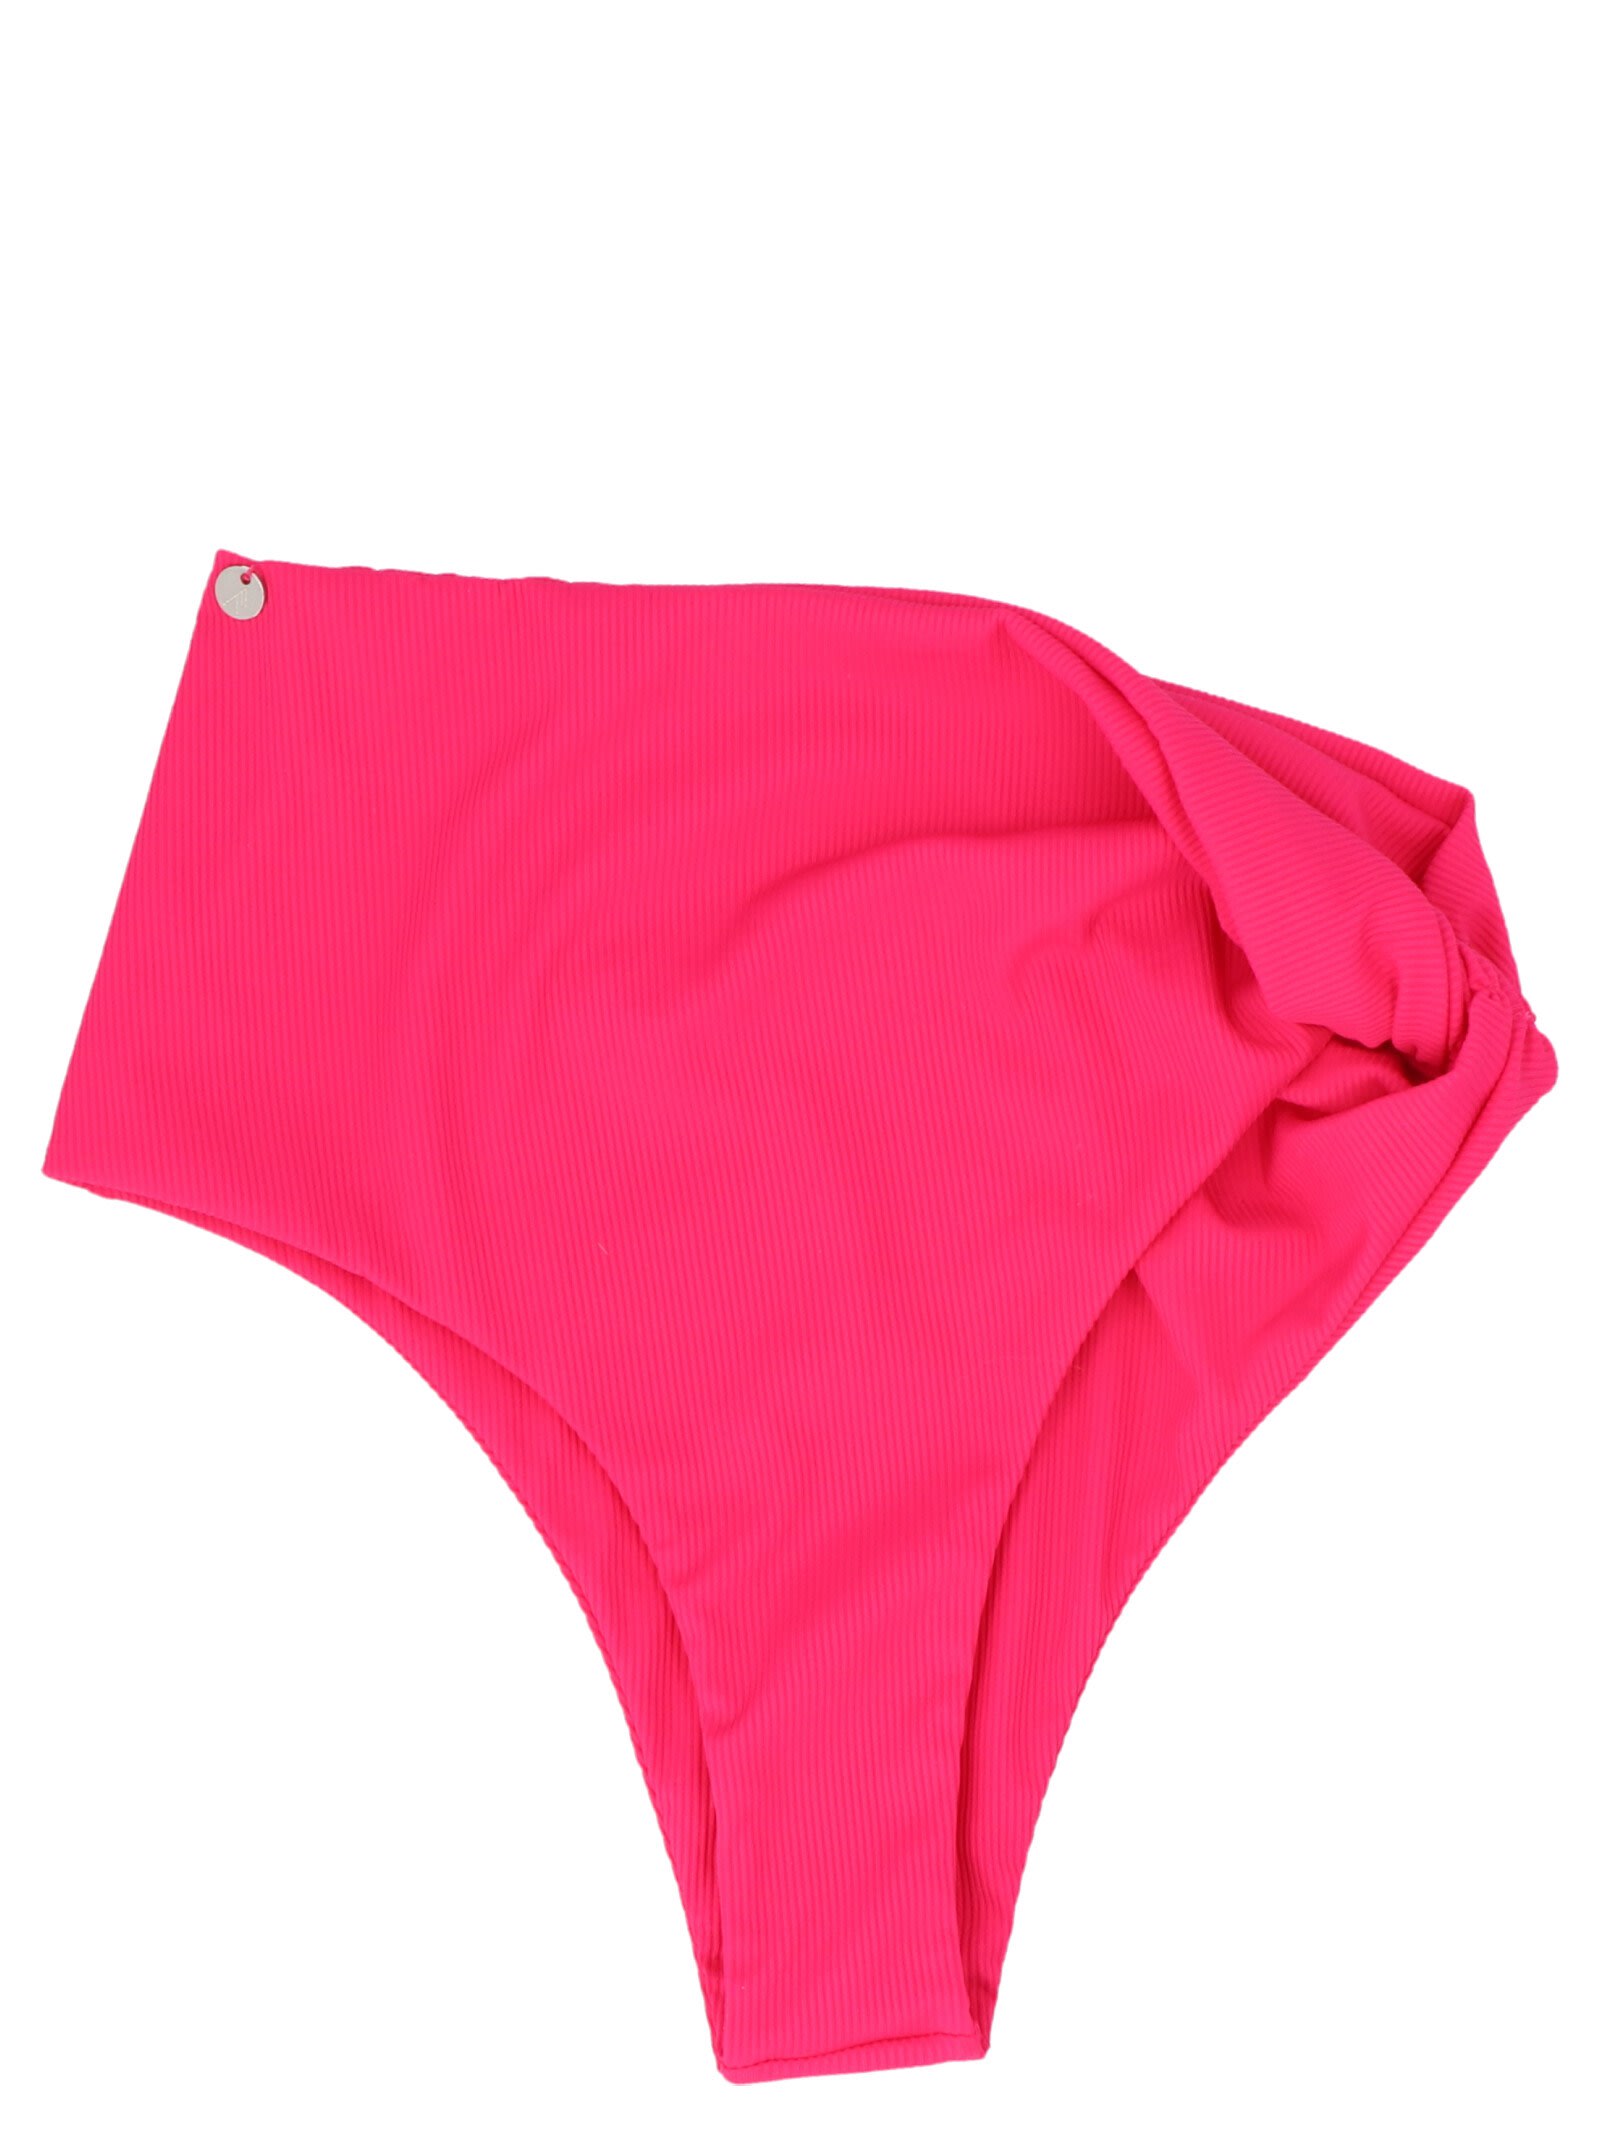 The Attico Capsule Beachwear High Waist Bikini Briefs